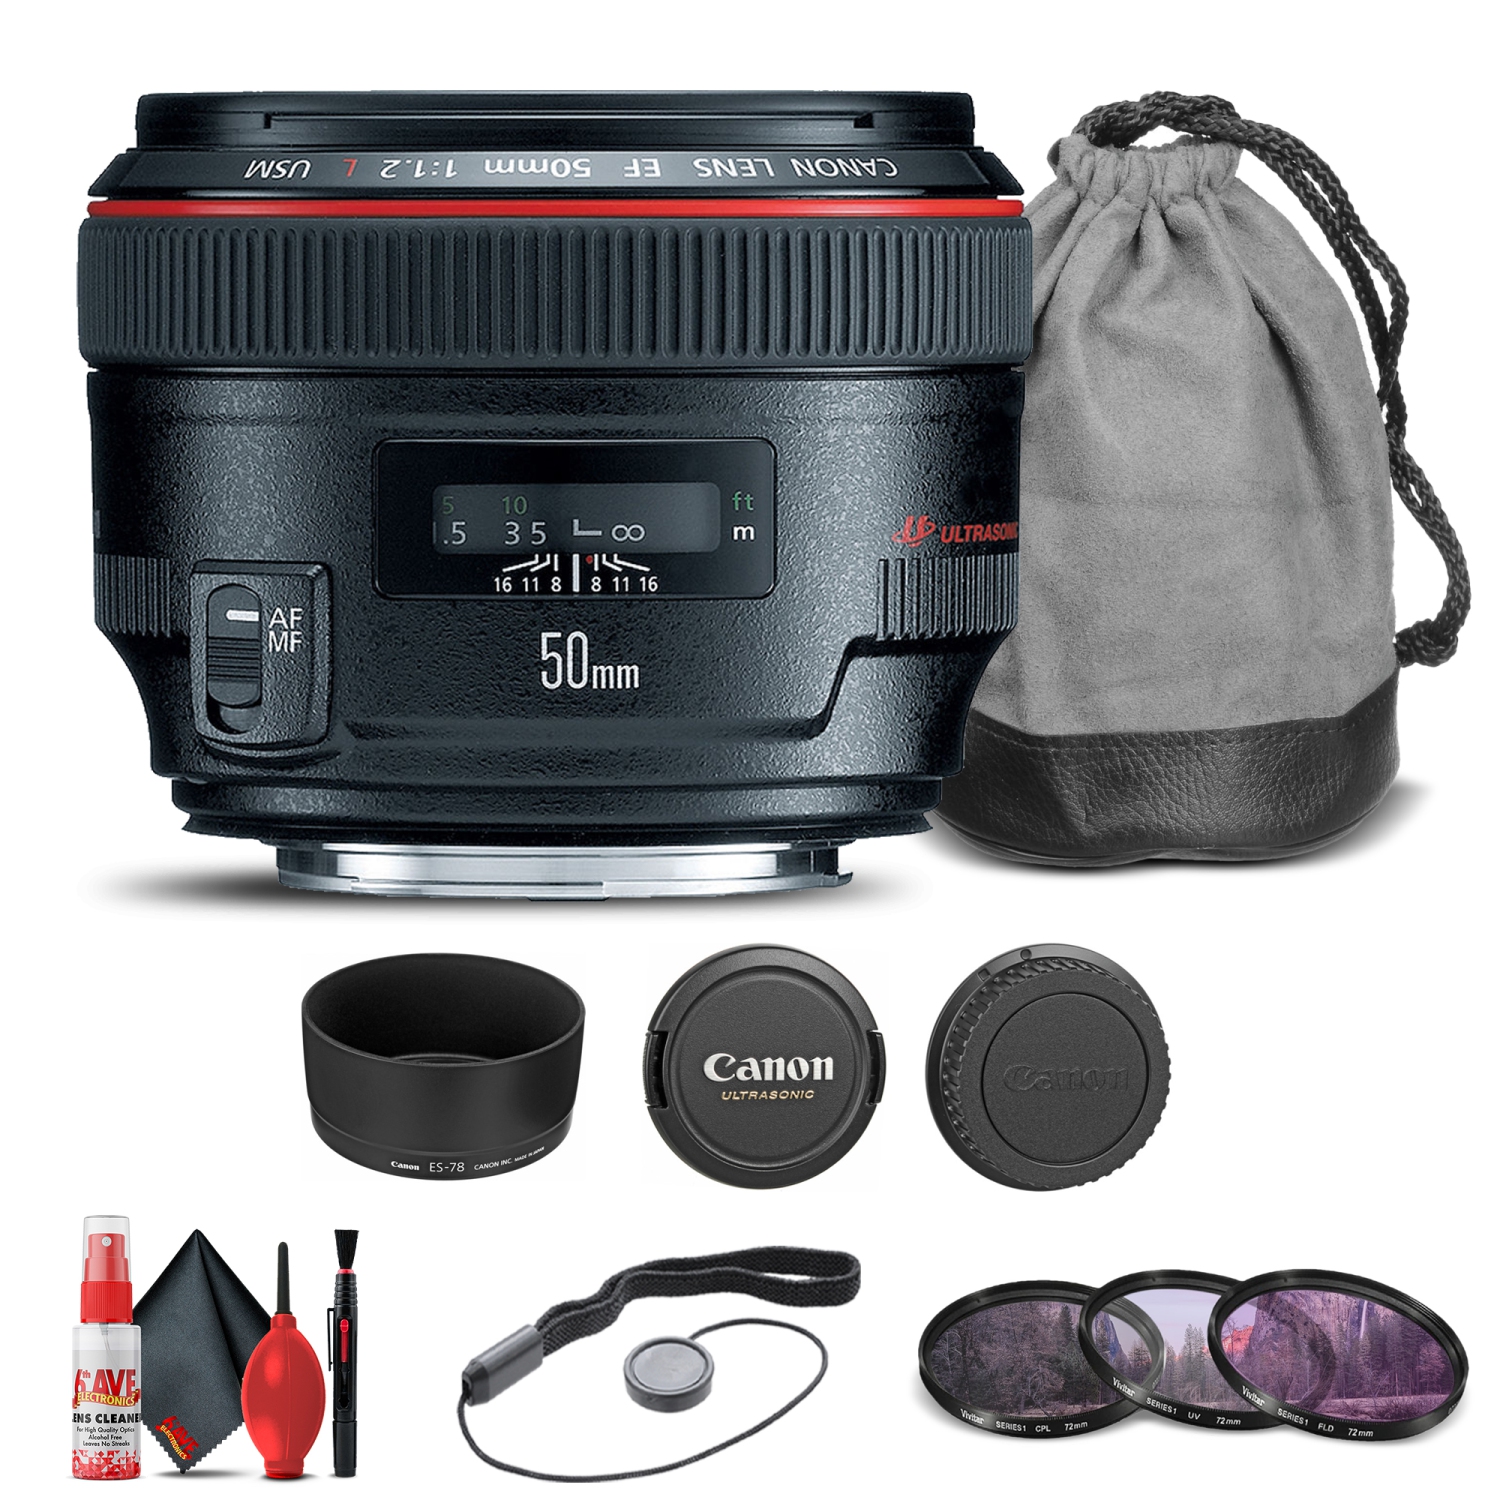 Canon EF 50mm f/1.2L USM Lens (1257B002) + Filter Kit + Cap Keeper Base Bundle